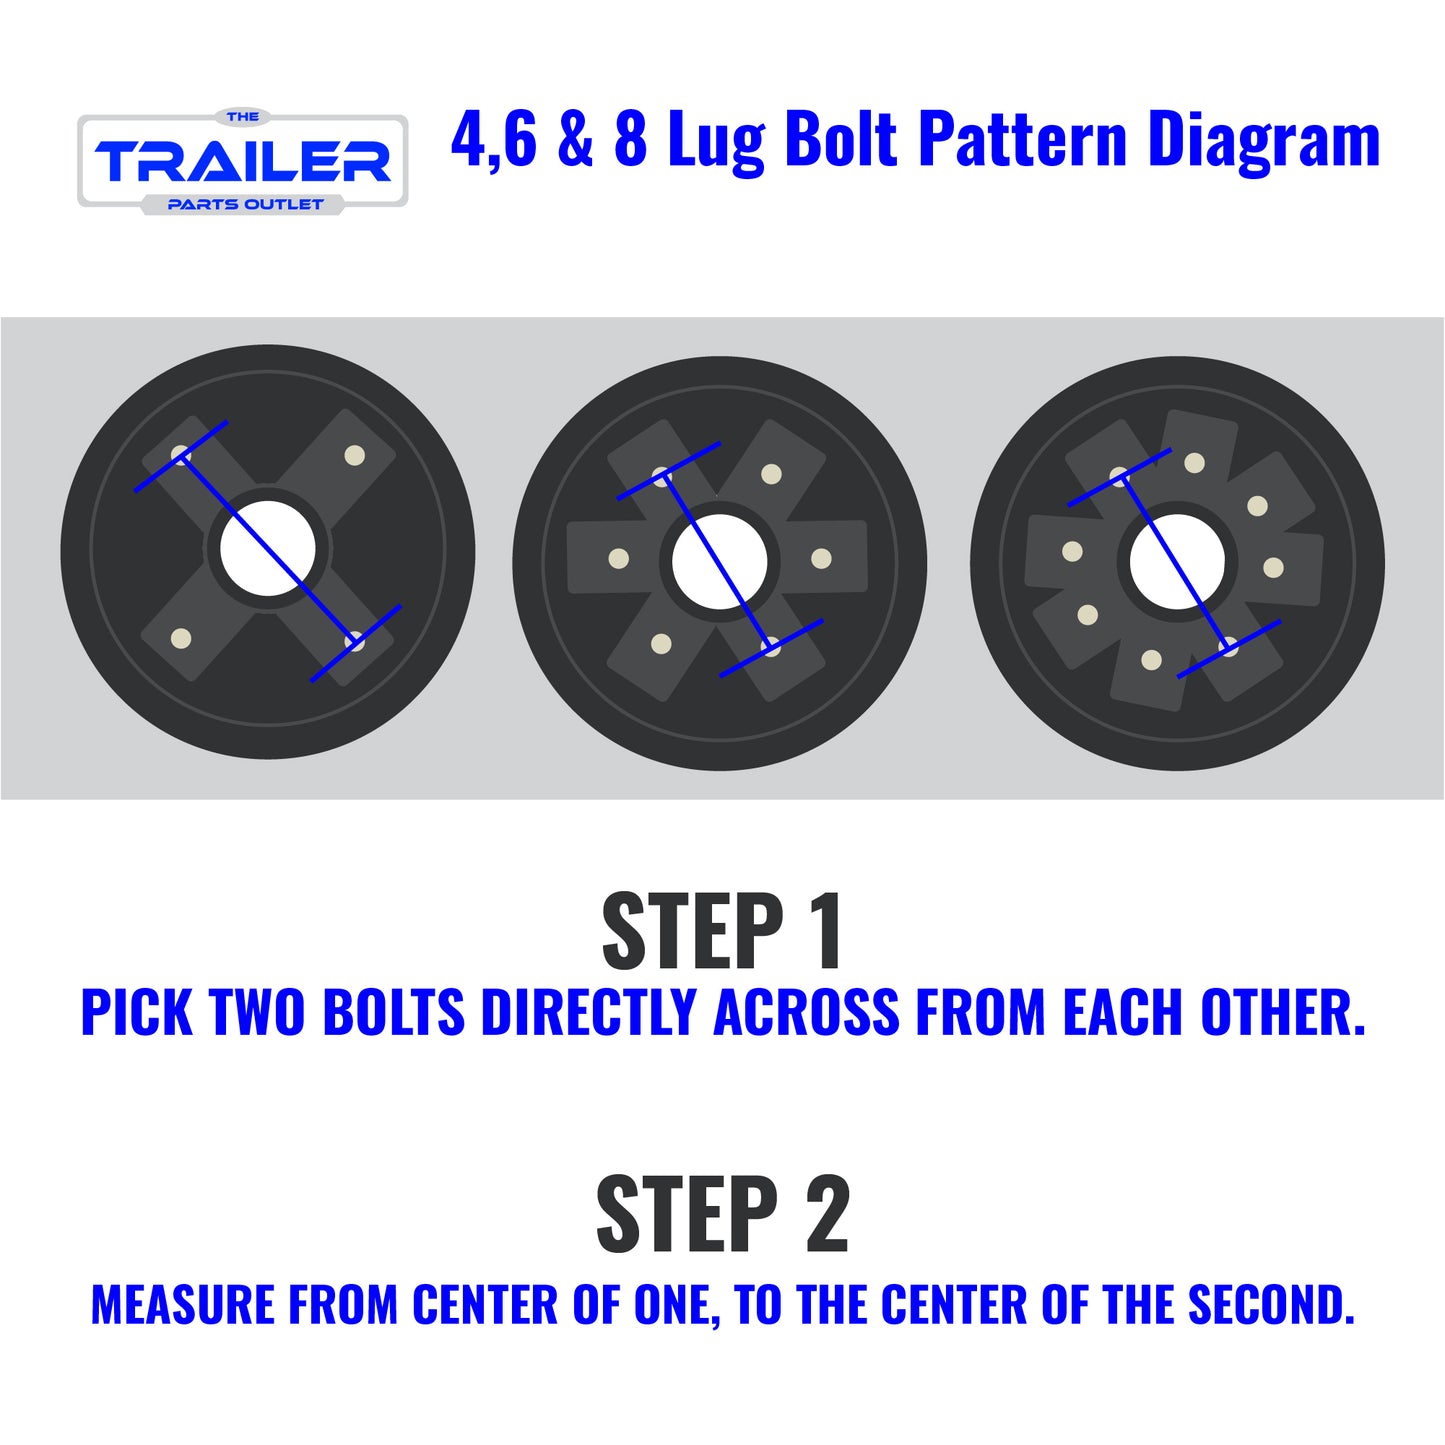 Bolt Pattern Diagram for 4,6 & 8 Lug 